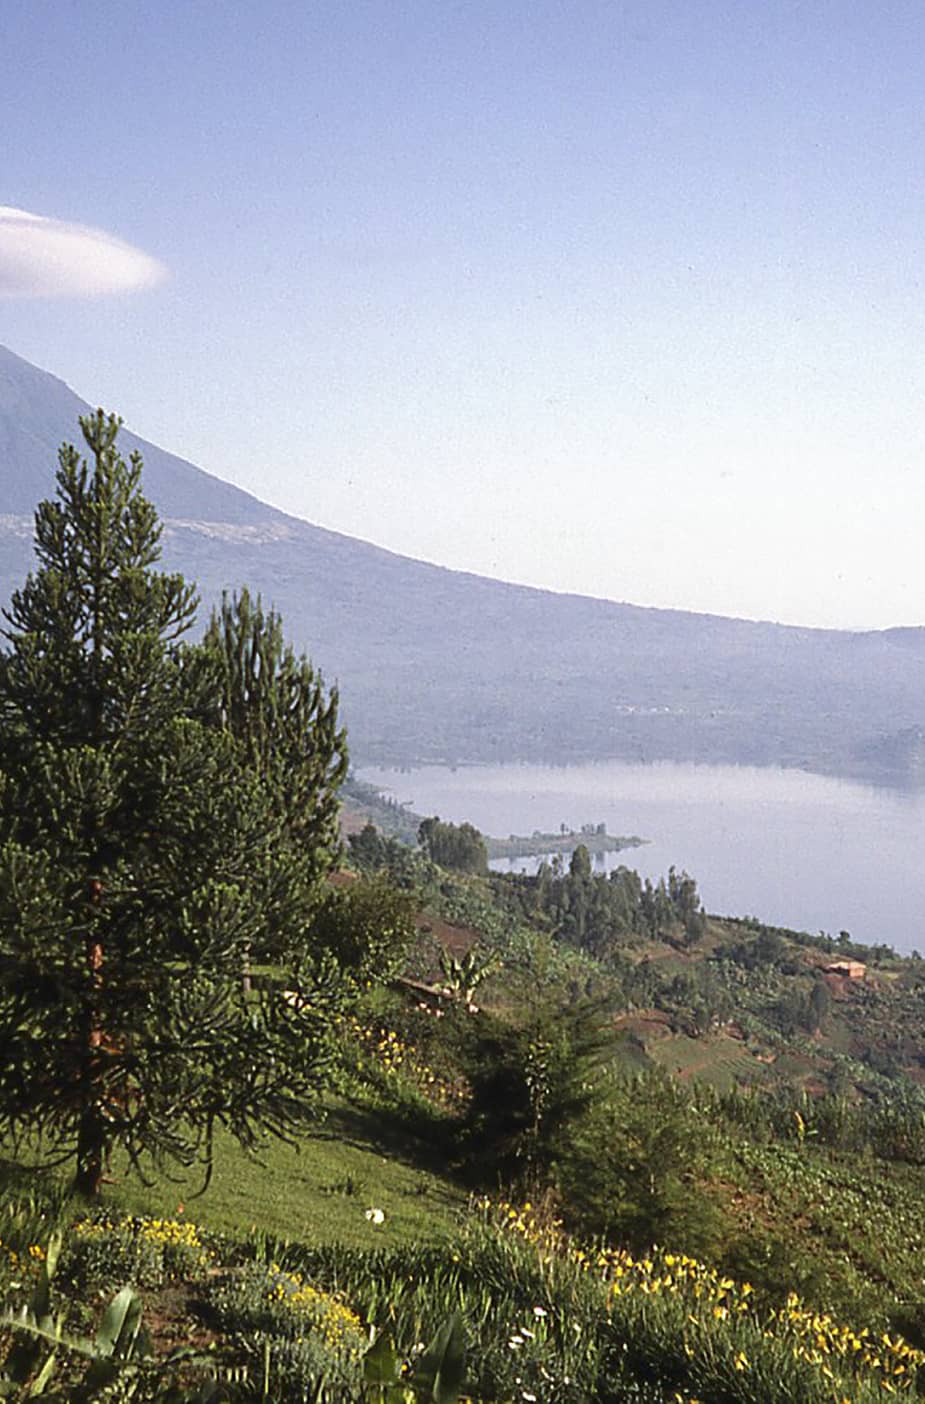  Rwanda  